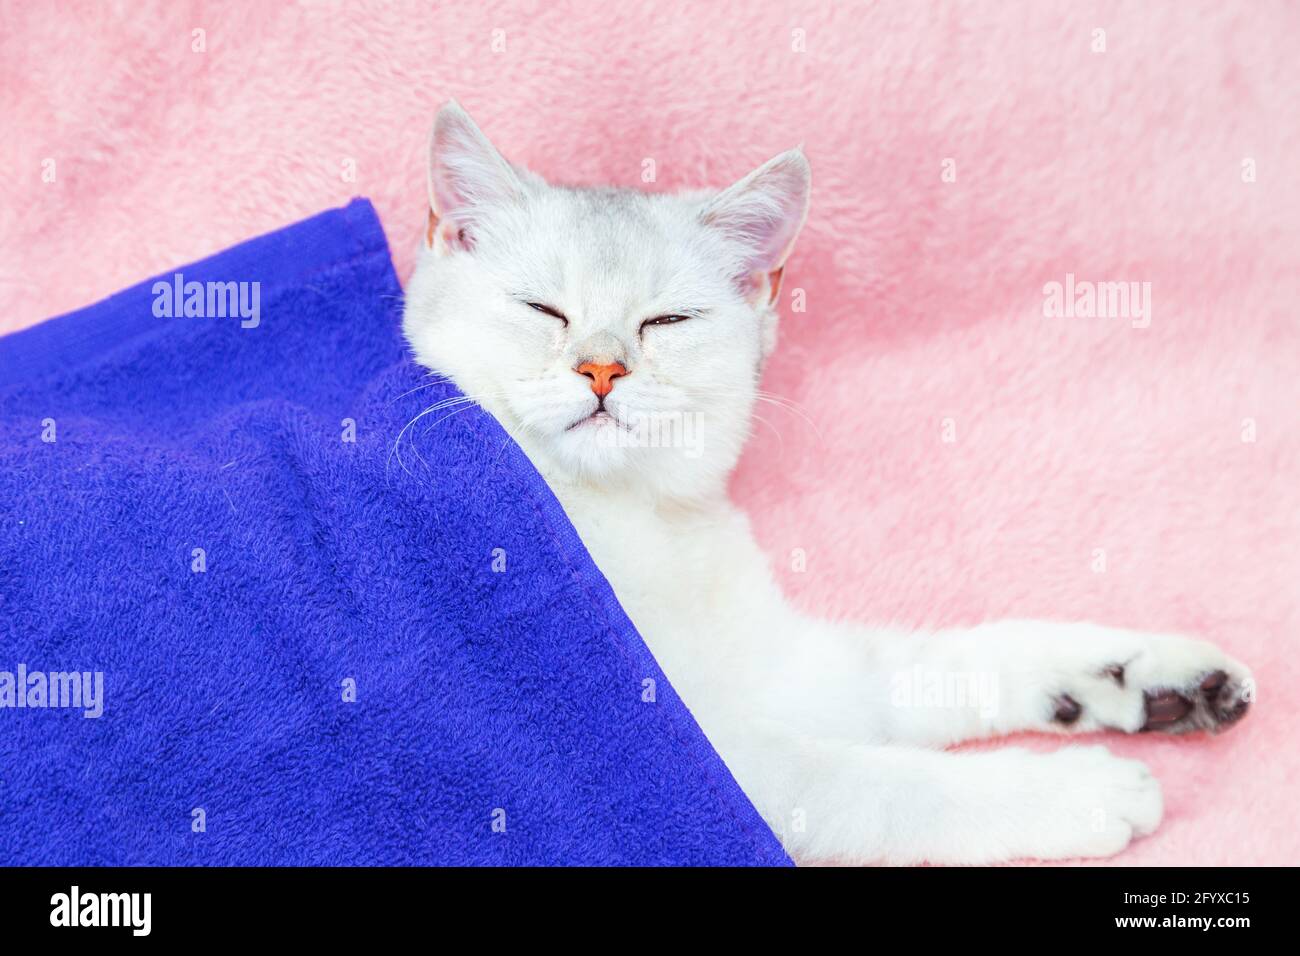 Il gatto di cinchilla britannico shorthair giace su un copriletto rosa. Riposo e relax. Foto Stock